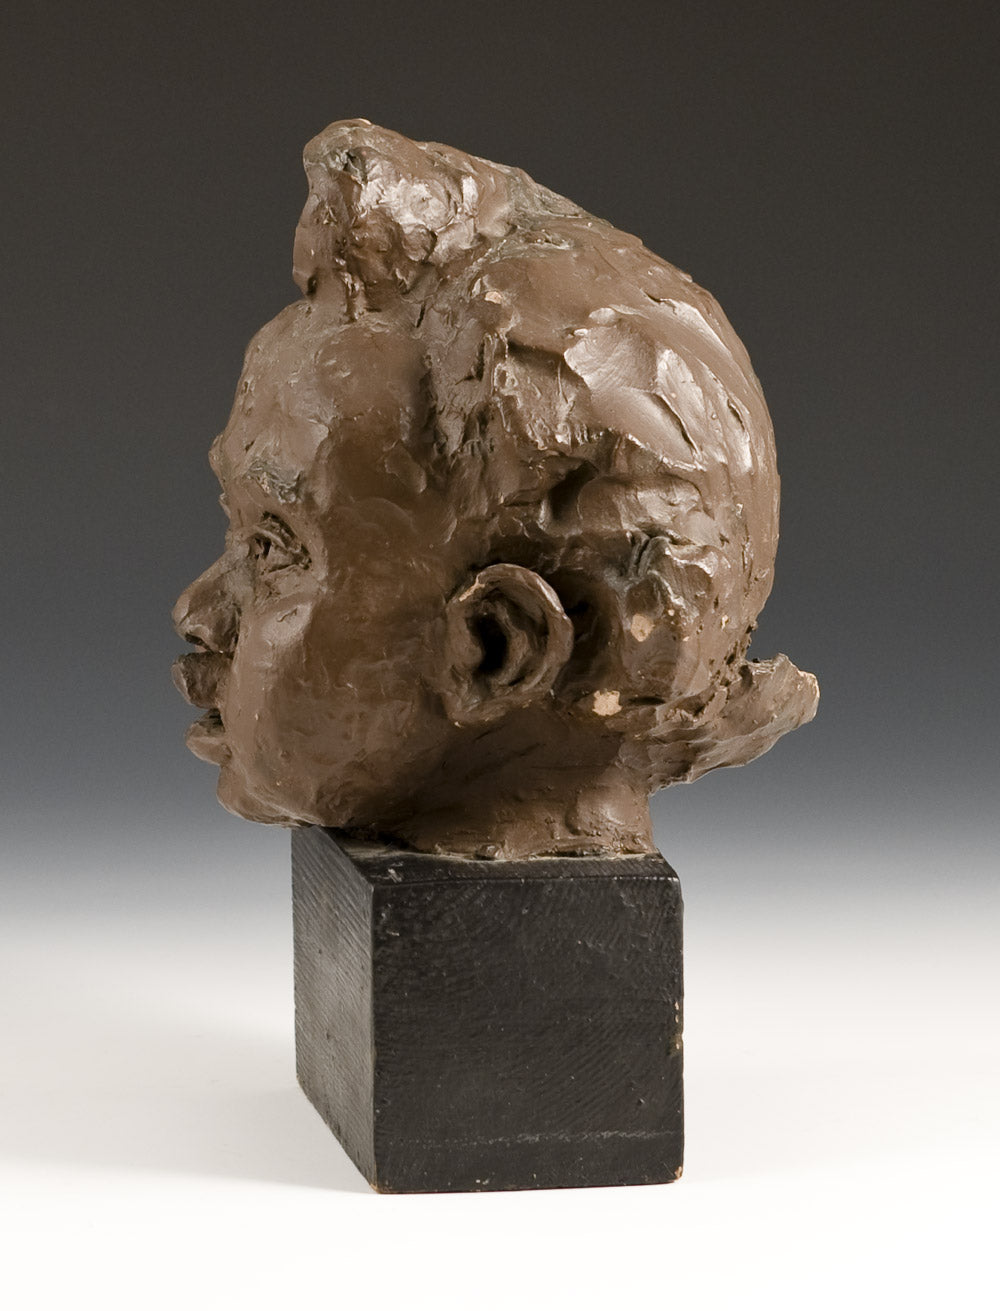 Child's Head (clay maquette)